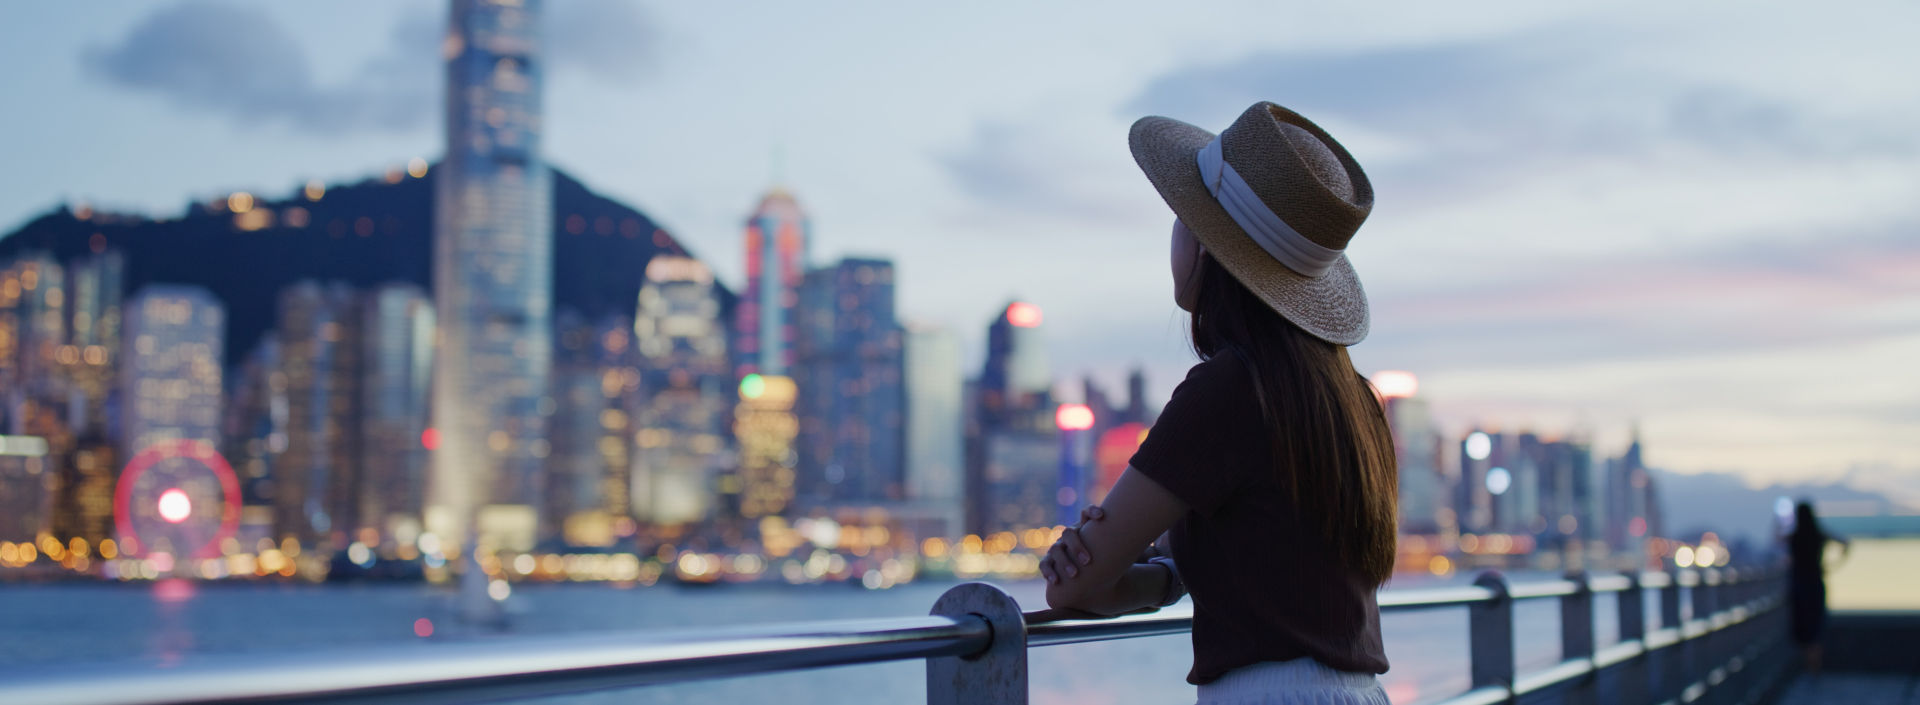 Woman enjoying the view of Hong Kong at night.